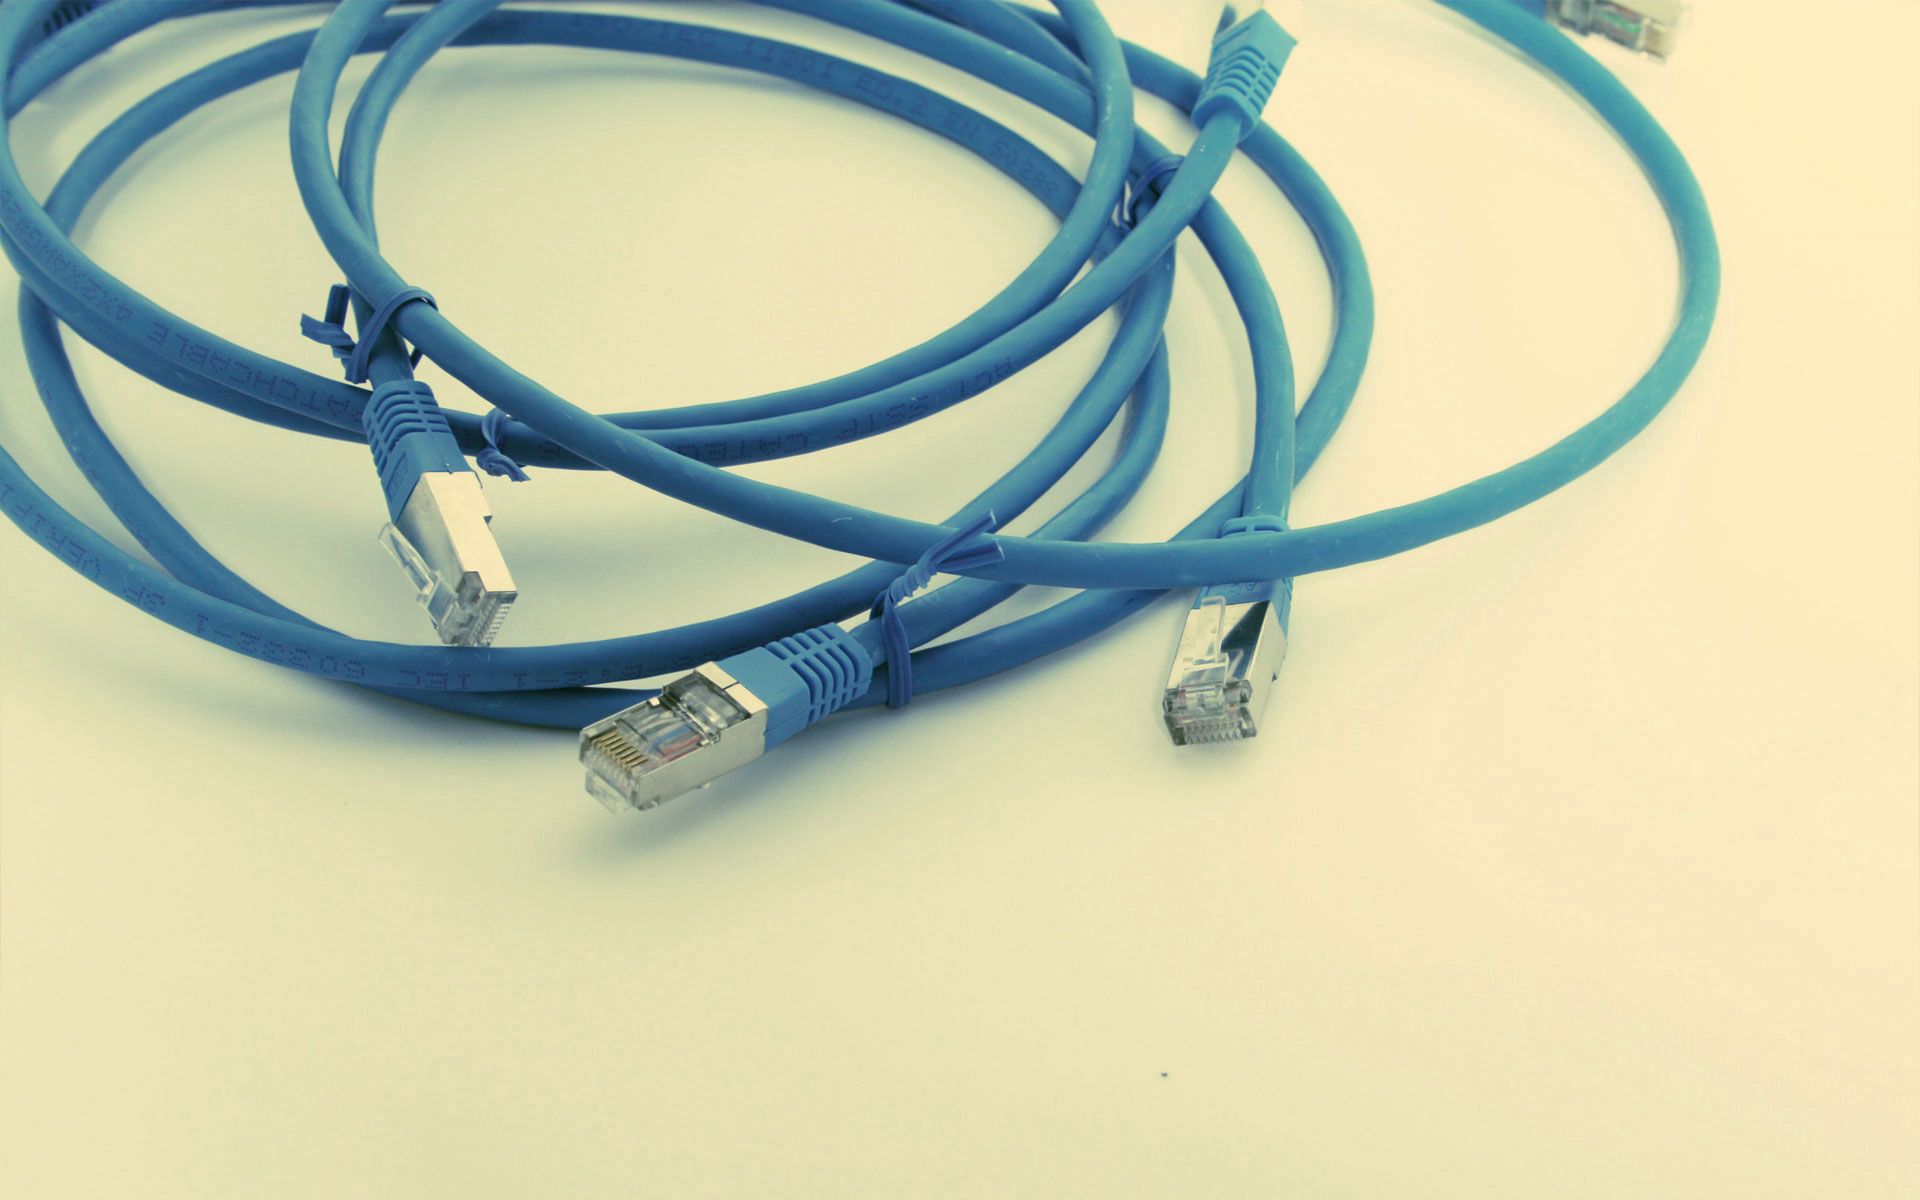 miscellaneous, wires, miscellanea, cable, wire, device, cord